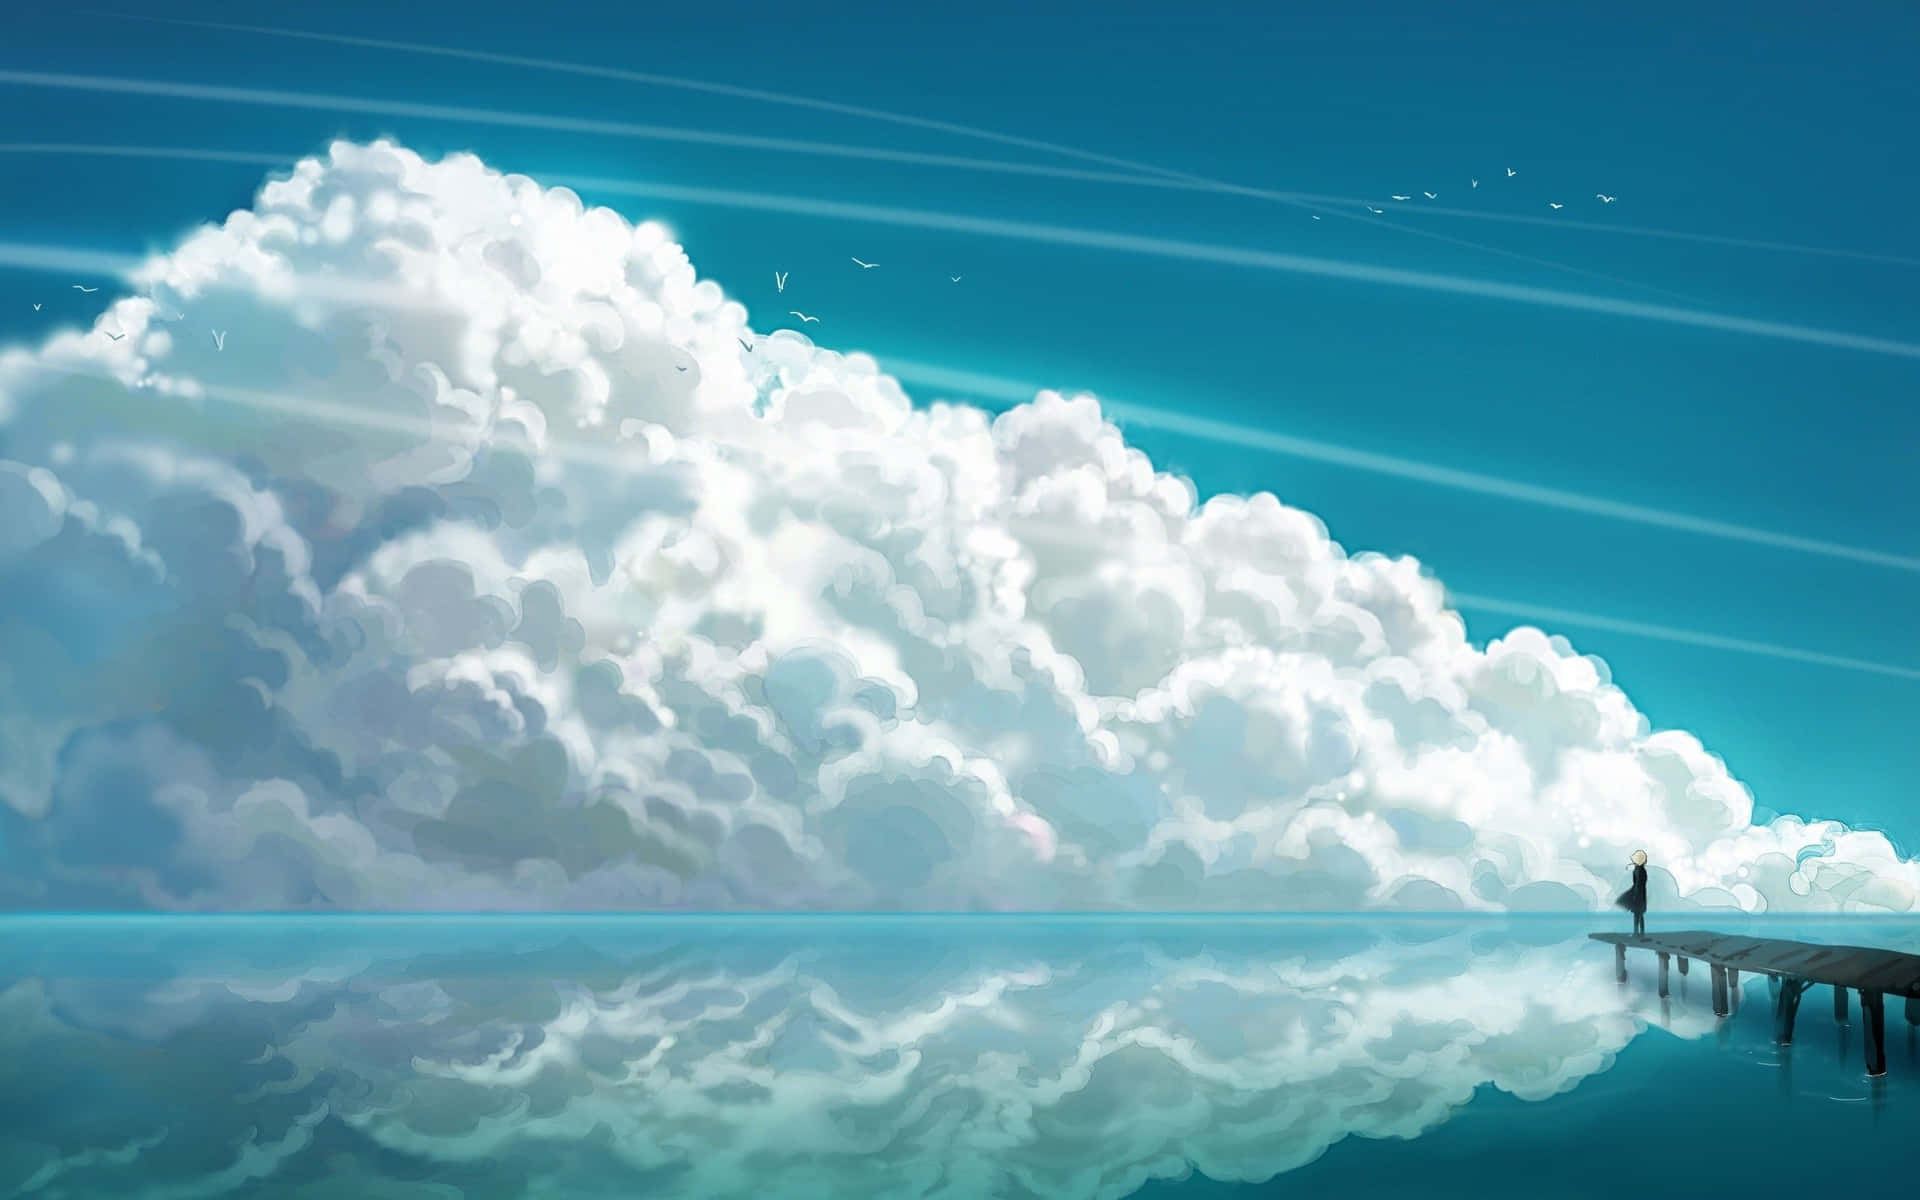 Einmalerischer Blick Auf Einen Anime-himmel, Wunderschön Und Surreal. Wallpaper